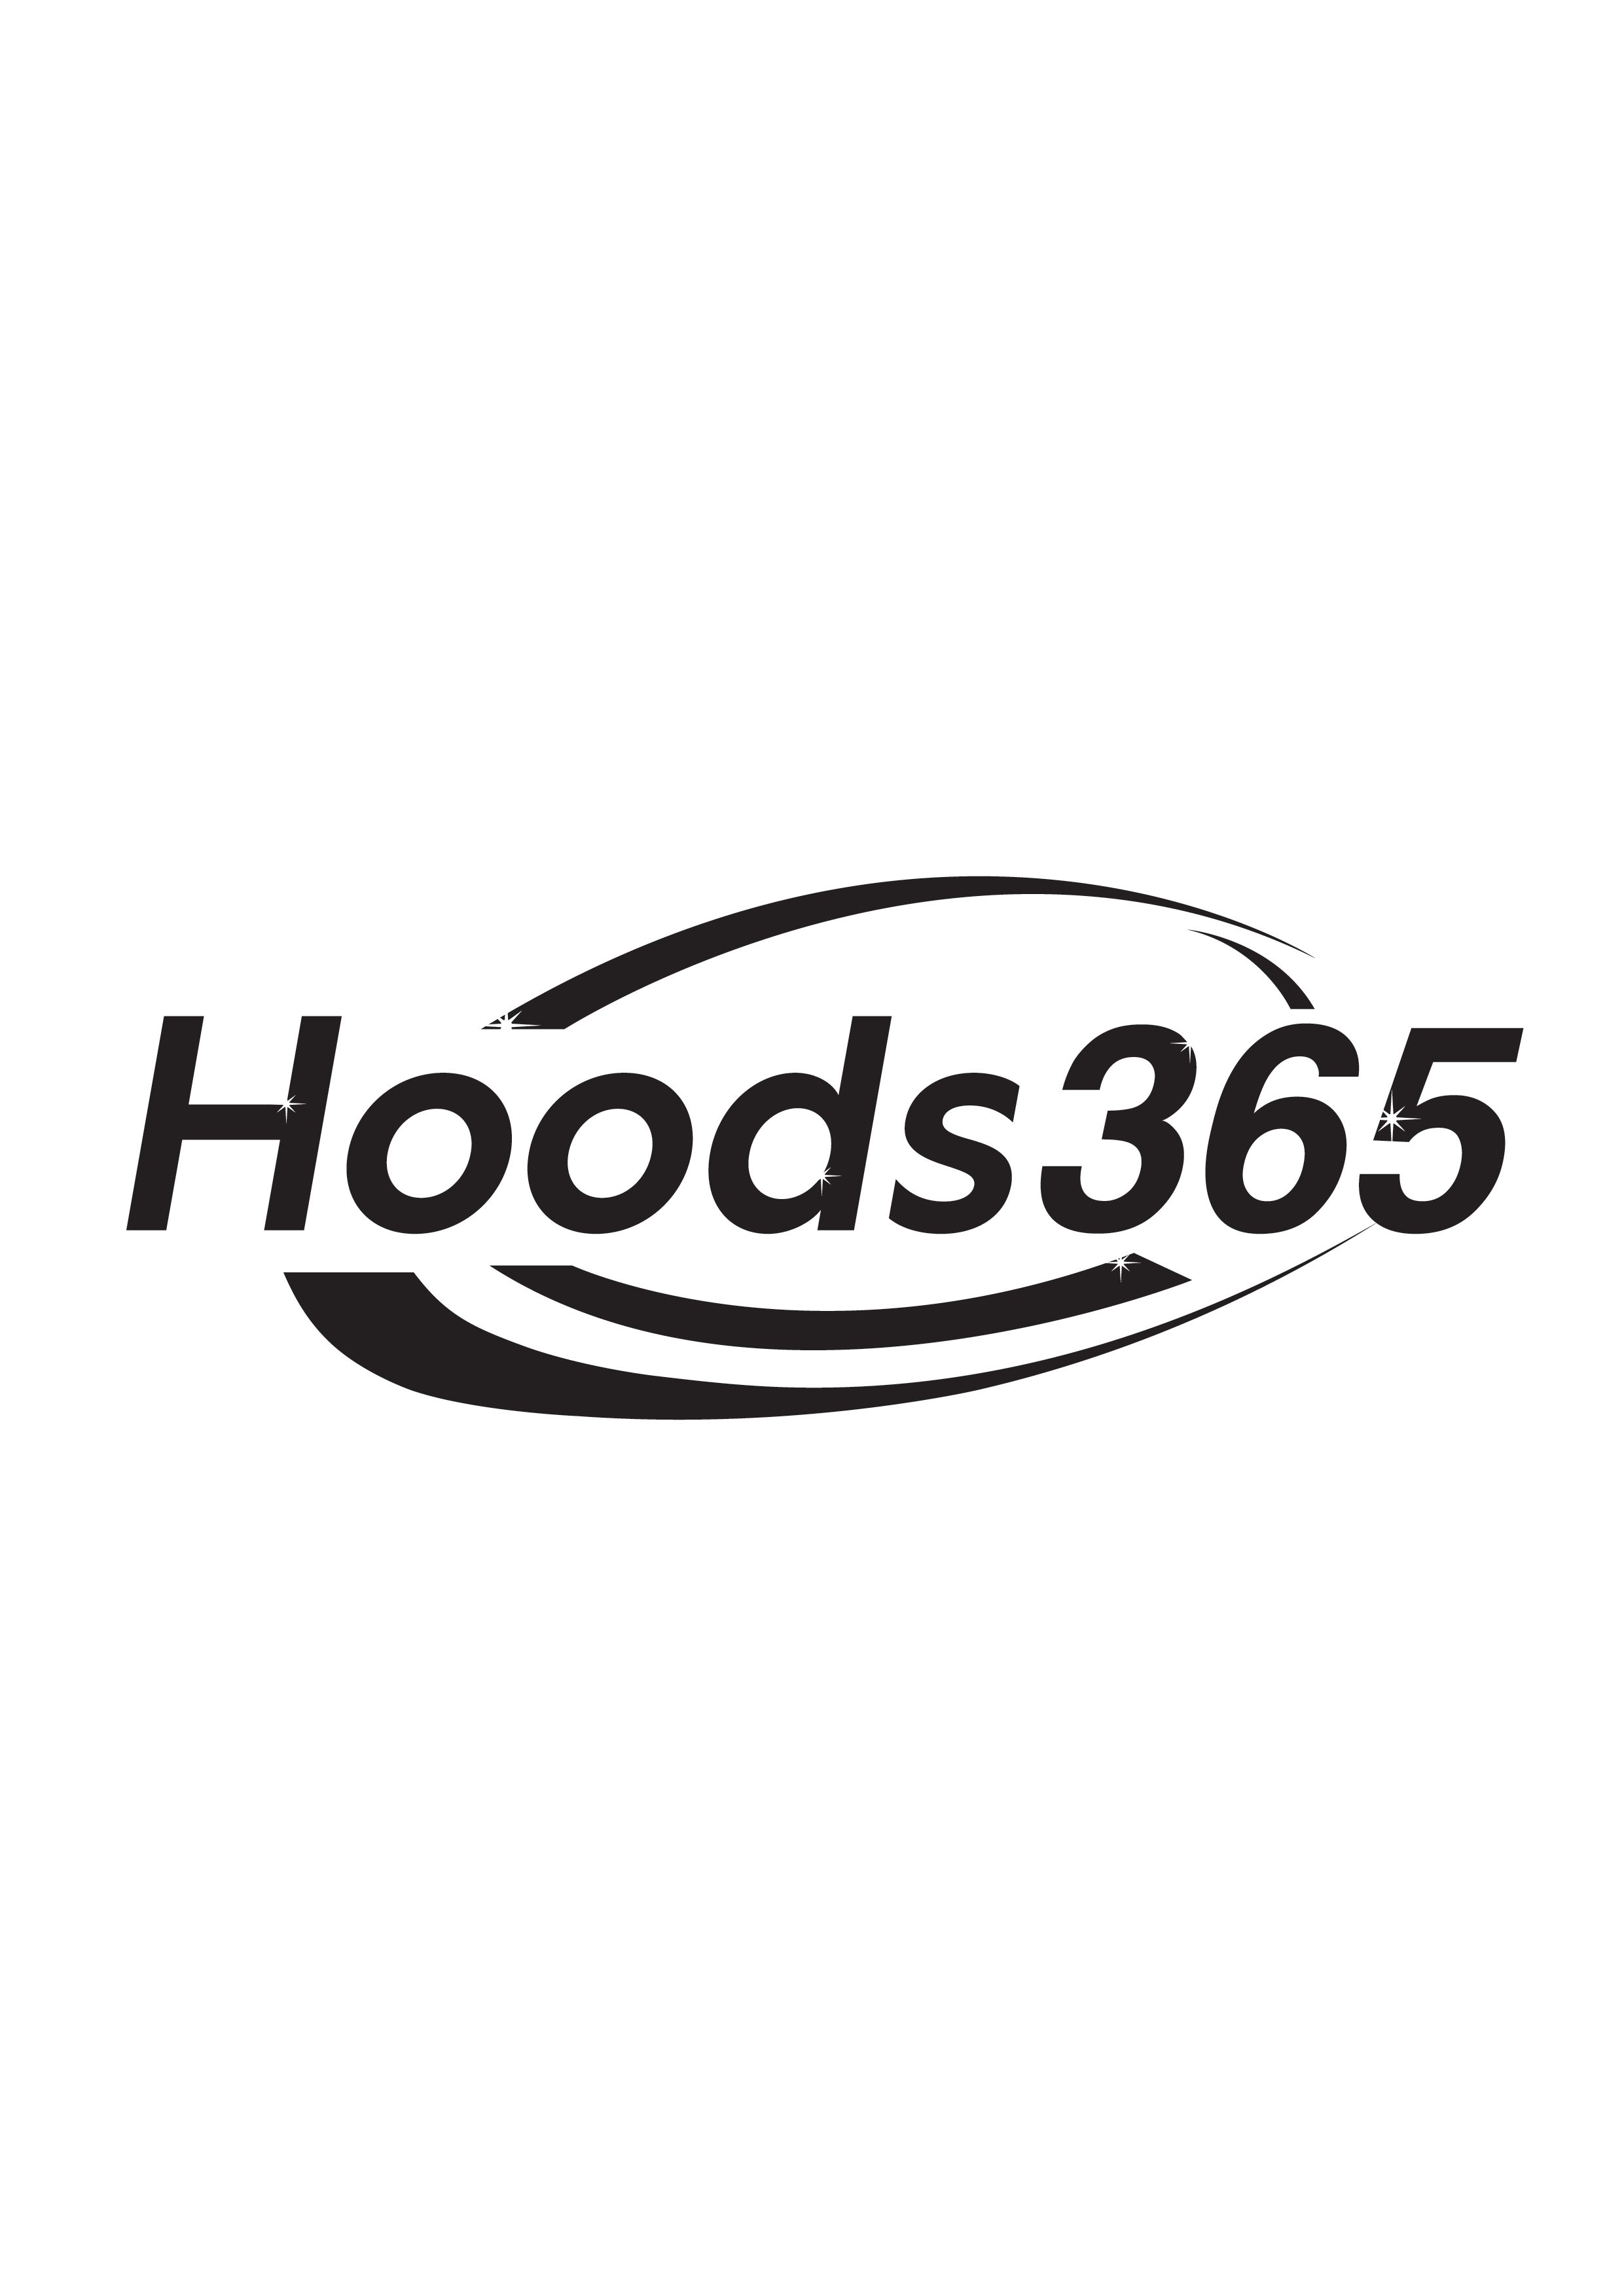 Hoods365